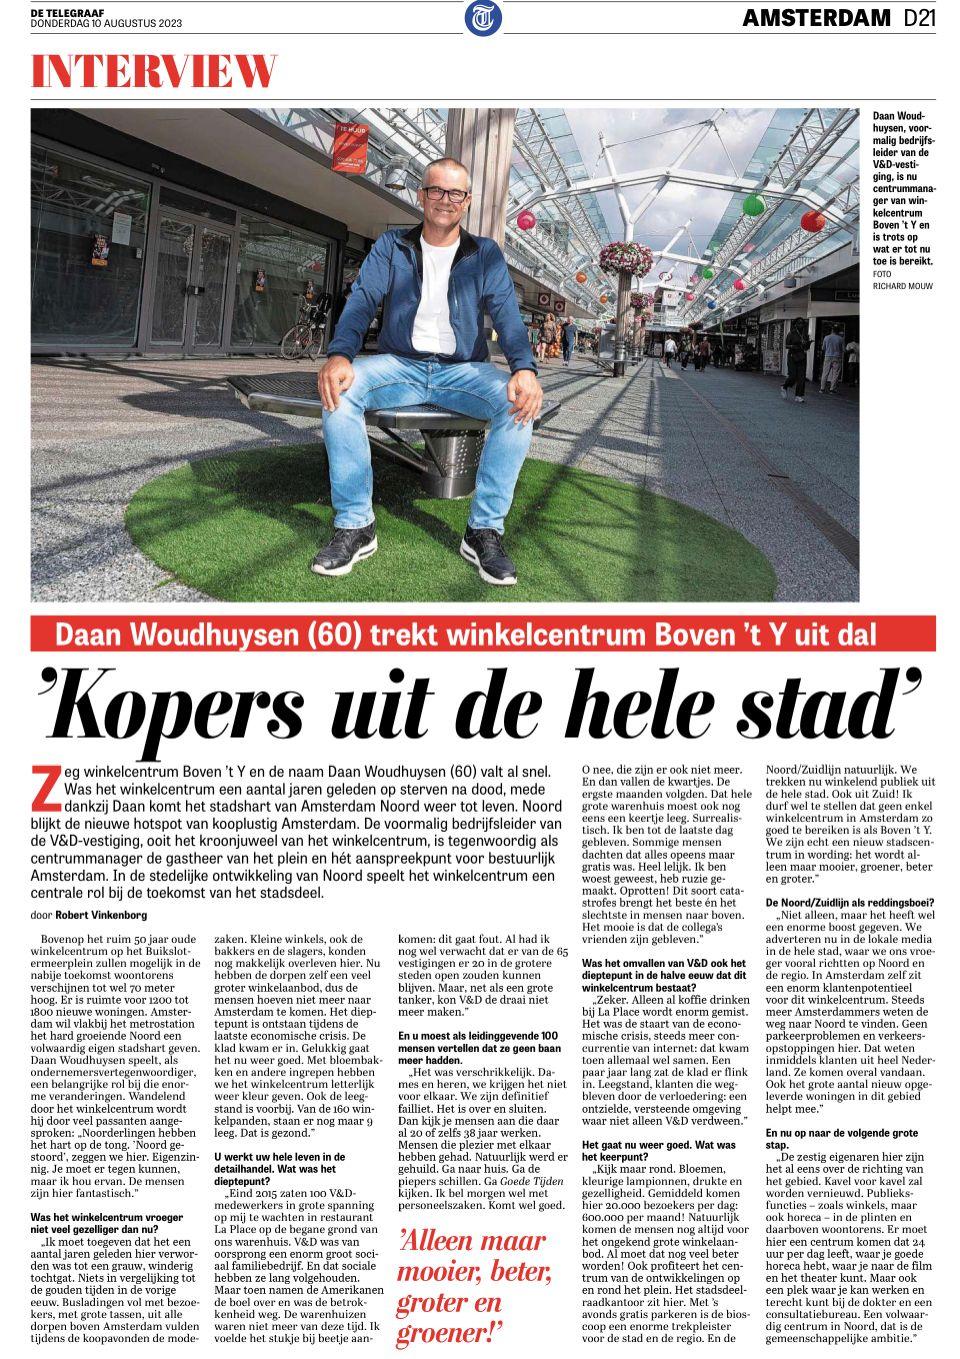 Interview in De Telegraaf